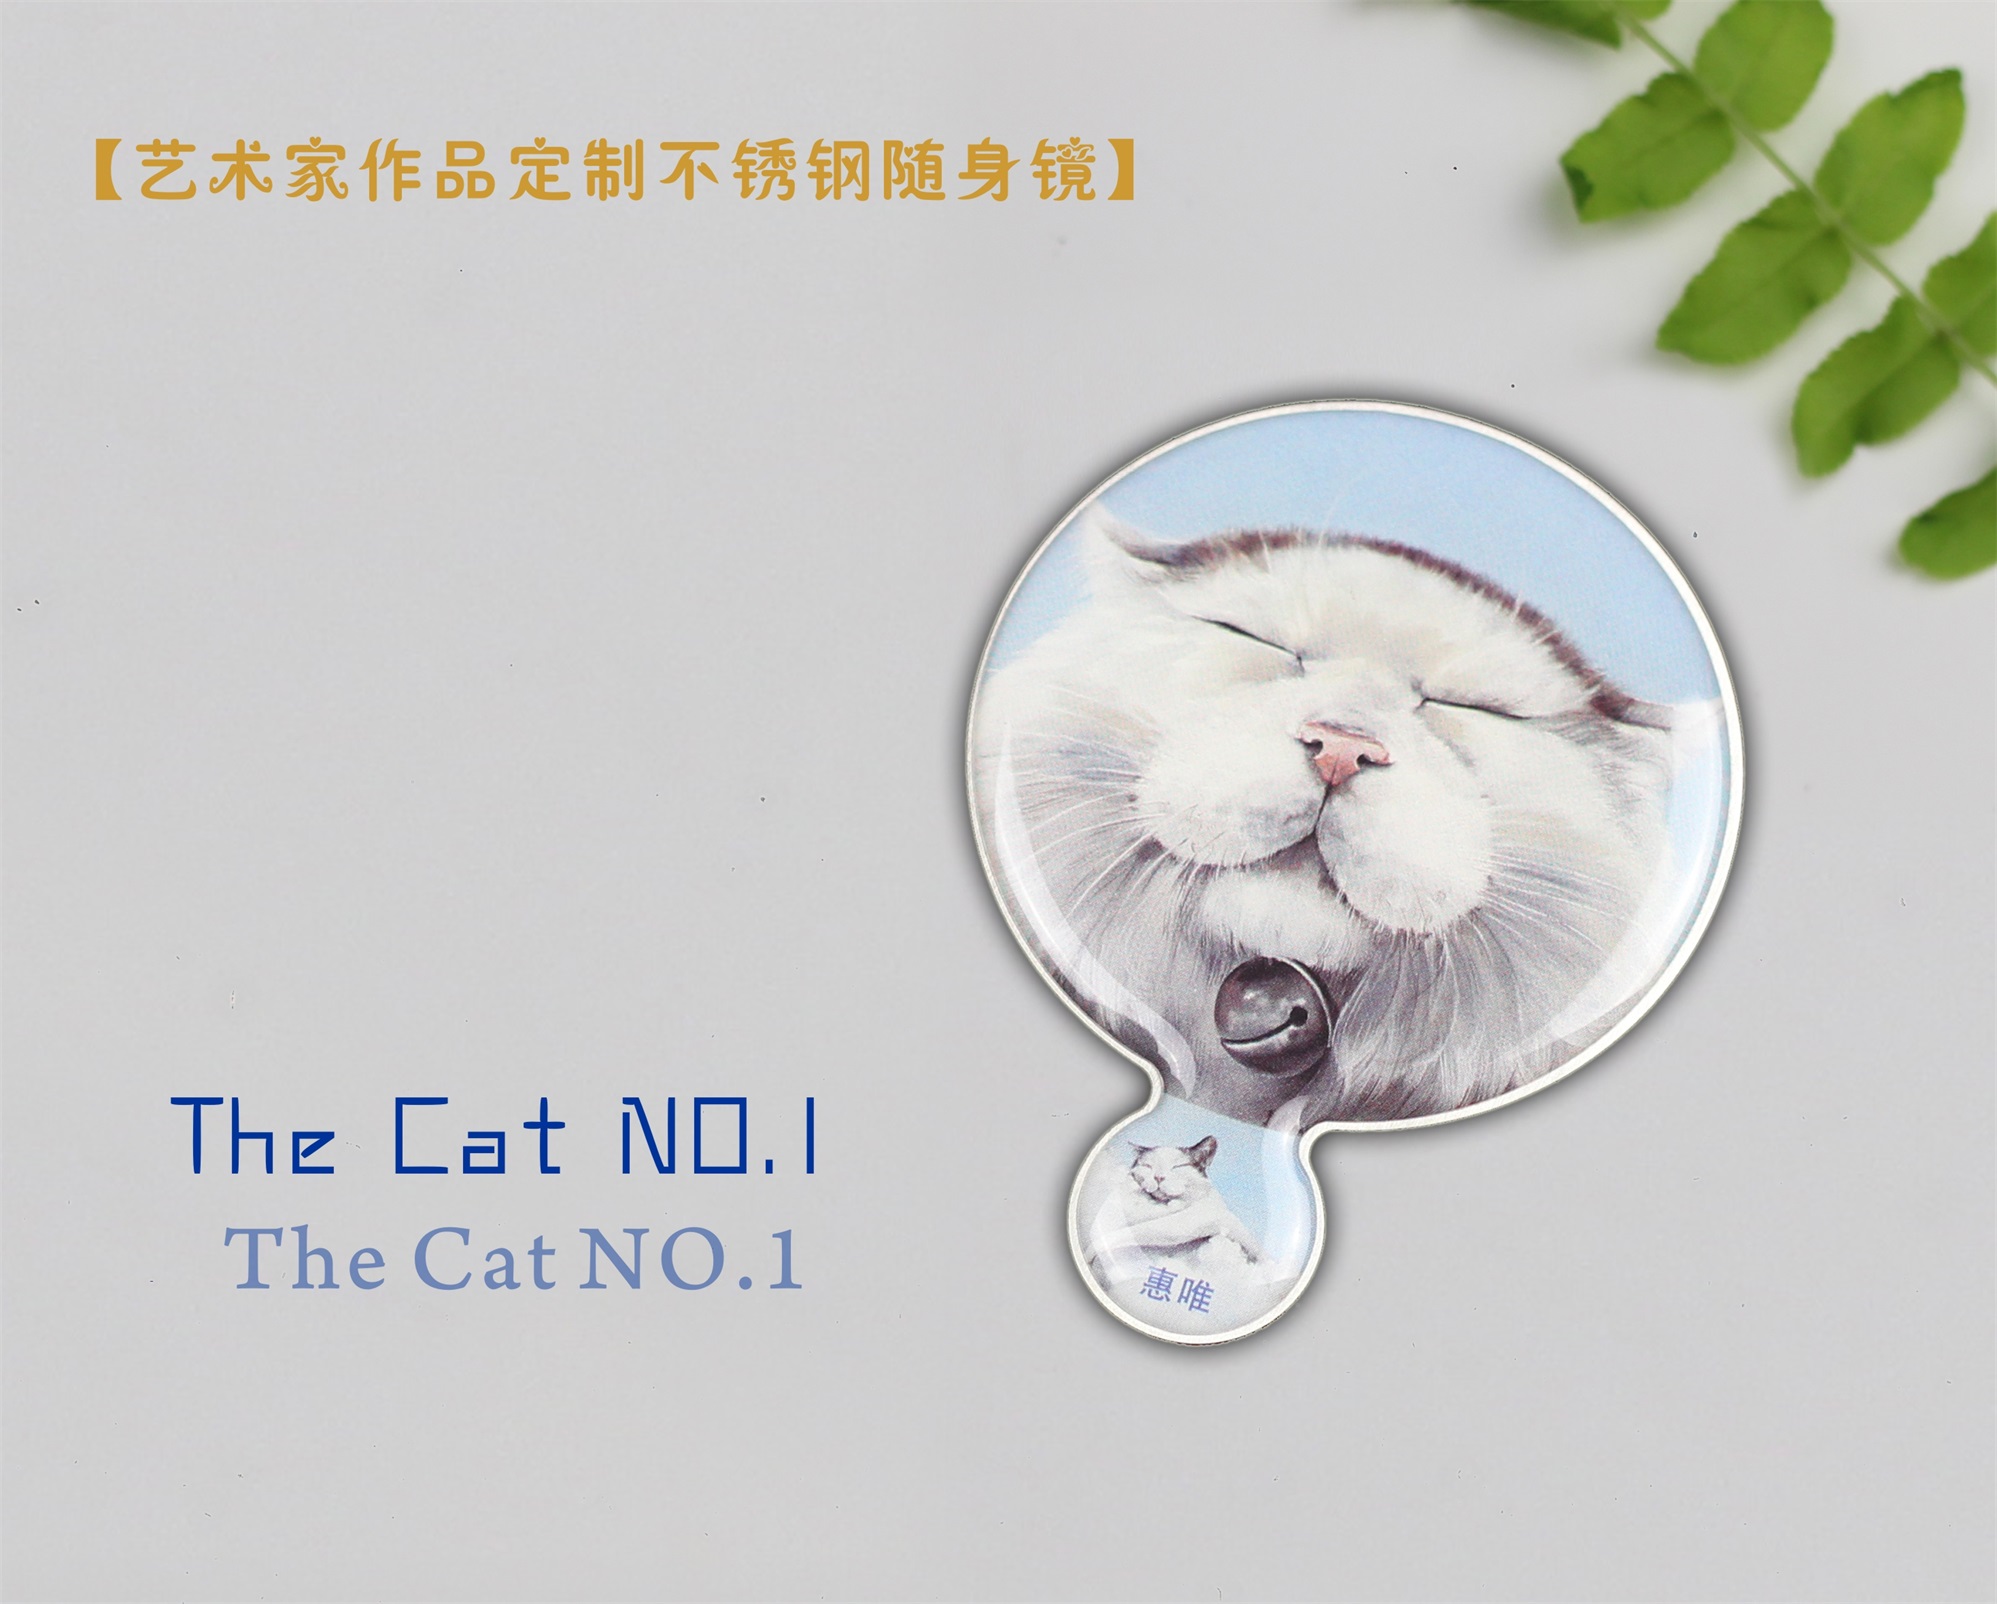 艺术家惠唯作品《The Cat NO.1》定制不锈钢随身镜